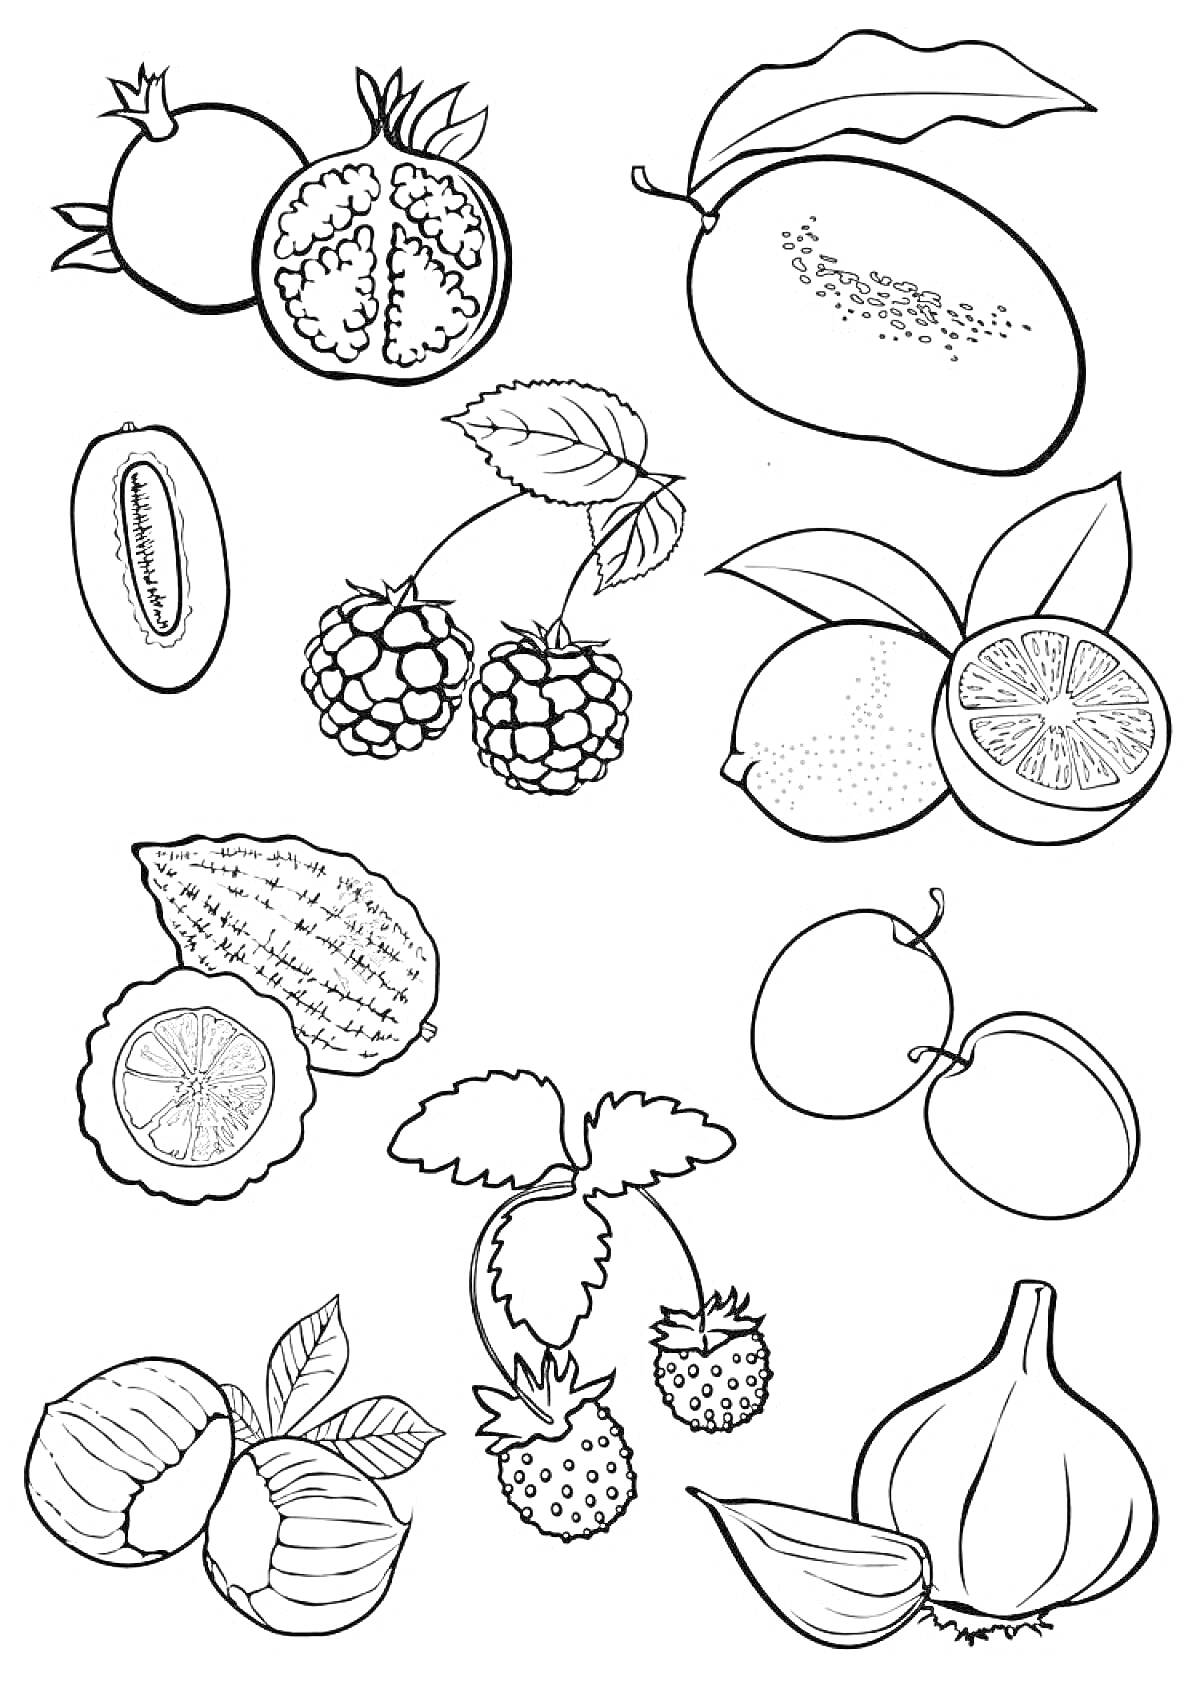 Раскраска Раскраска с изображениями граната, манго, киви, малины, лимона, лайма, личи, абрикоса, фундука и инжира